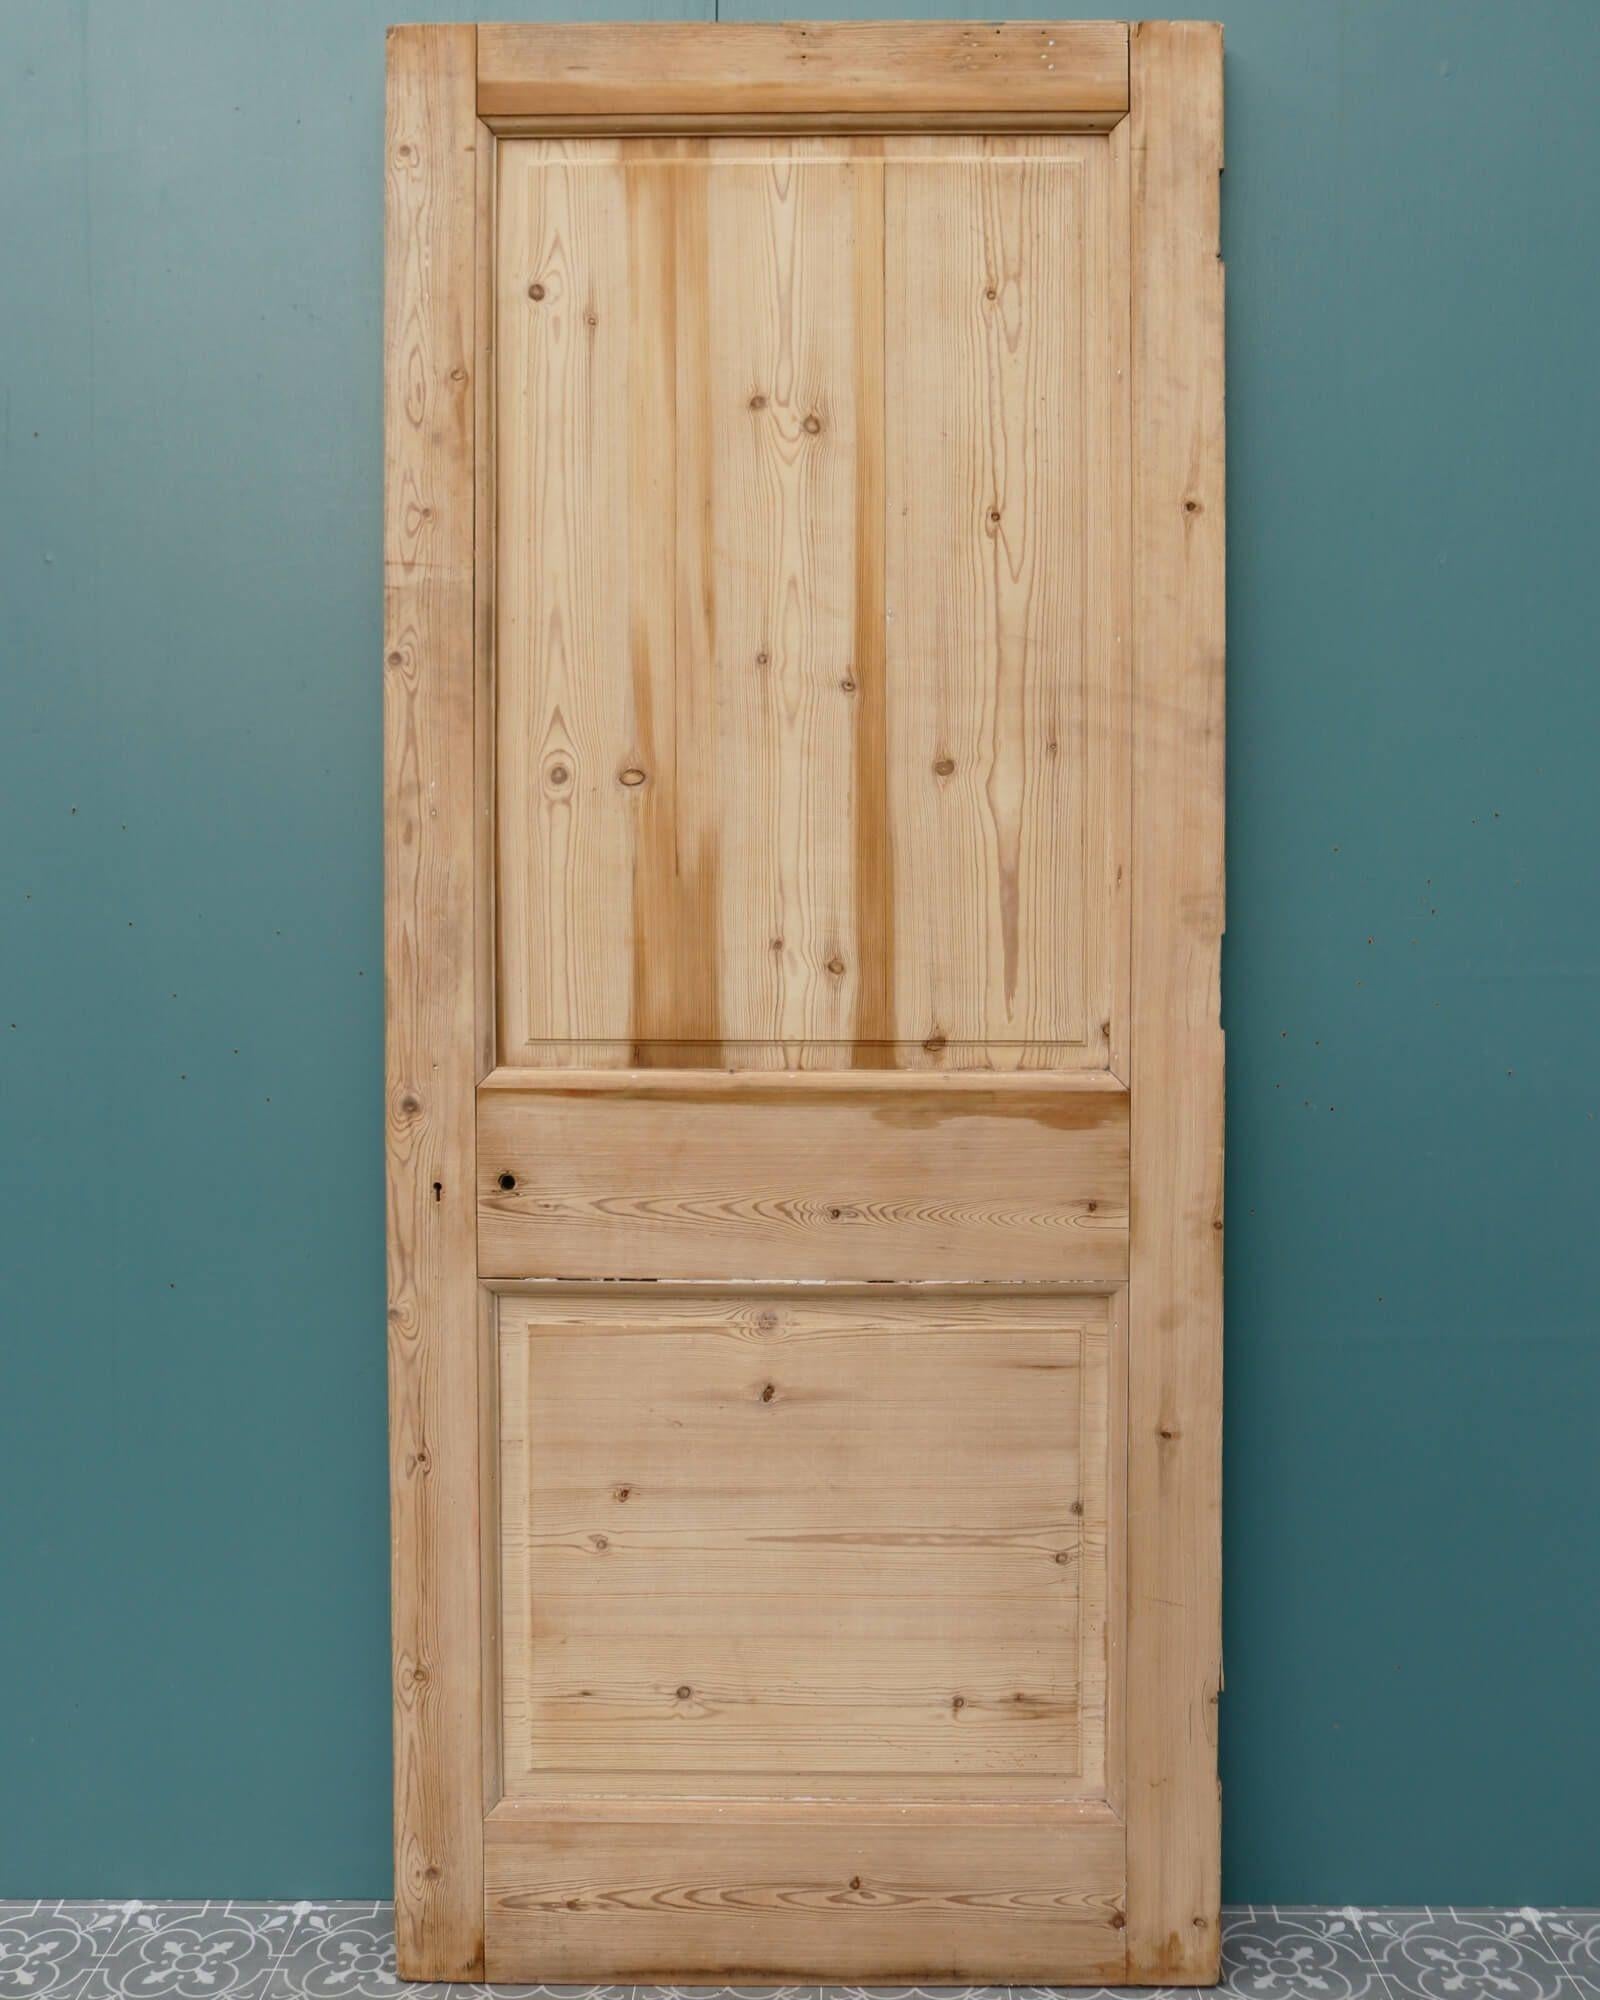 Une élégante porte ancienne en pin anglais à deux panneaux pour un usage intérieur datant du début du 20e siècle. Fabriquée en pin, cette porte de style victorien présente des panneaux à relief et à champ d'un côté et des panneaux unis de l'autre.